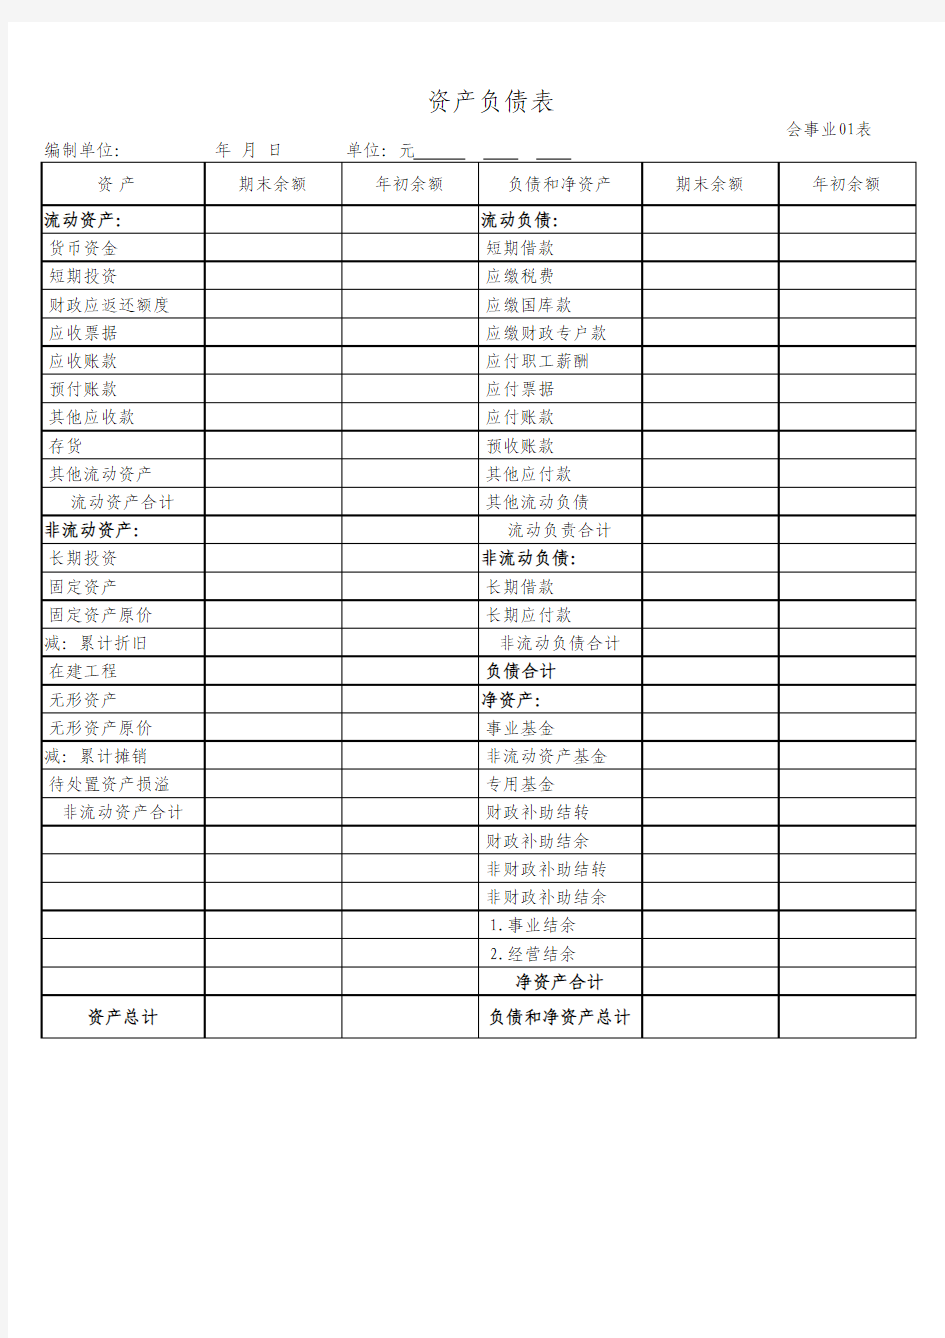 2013版事业单位财务报表(套表)